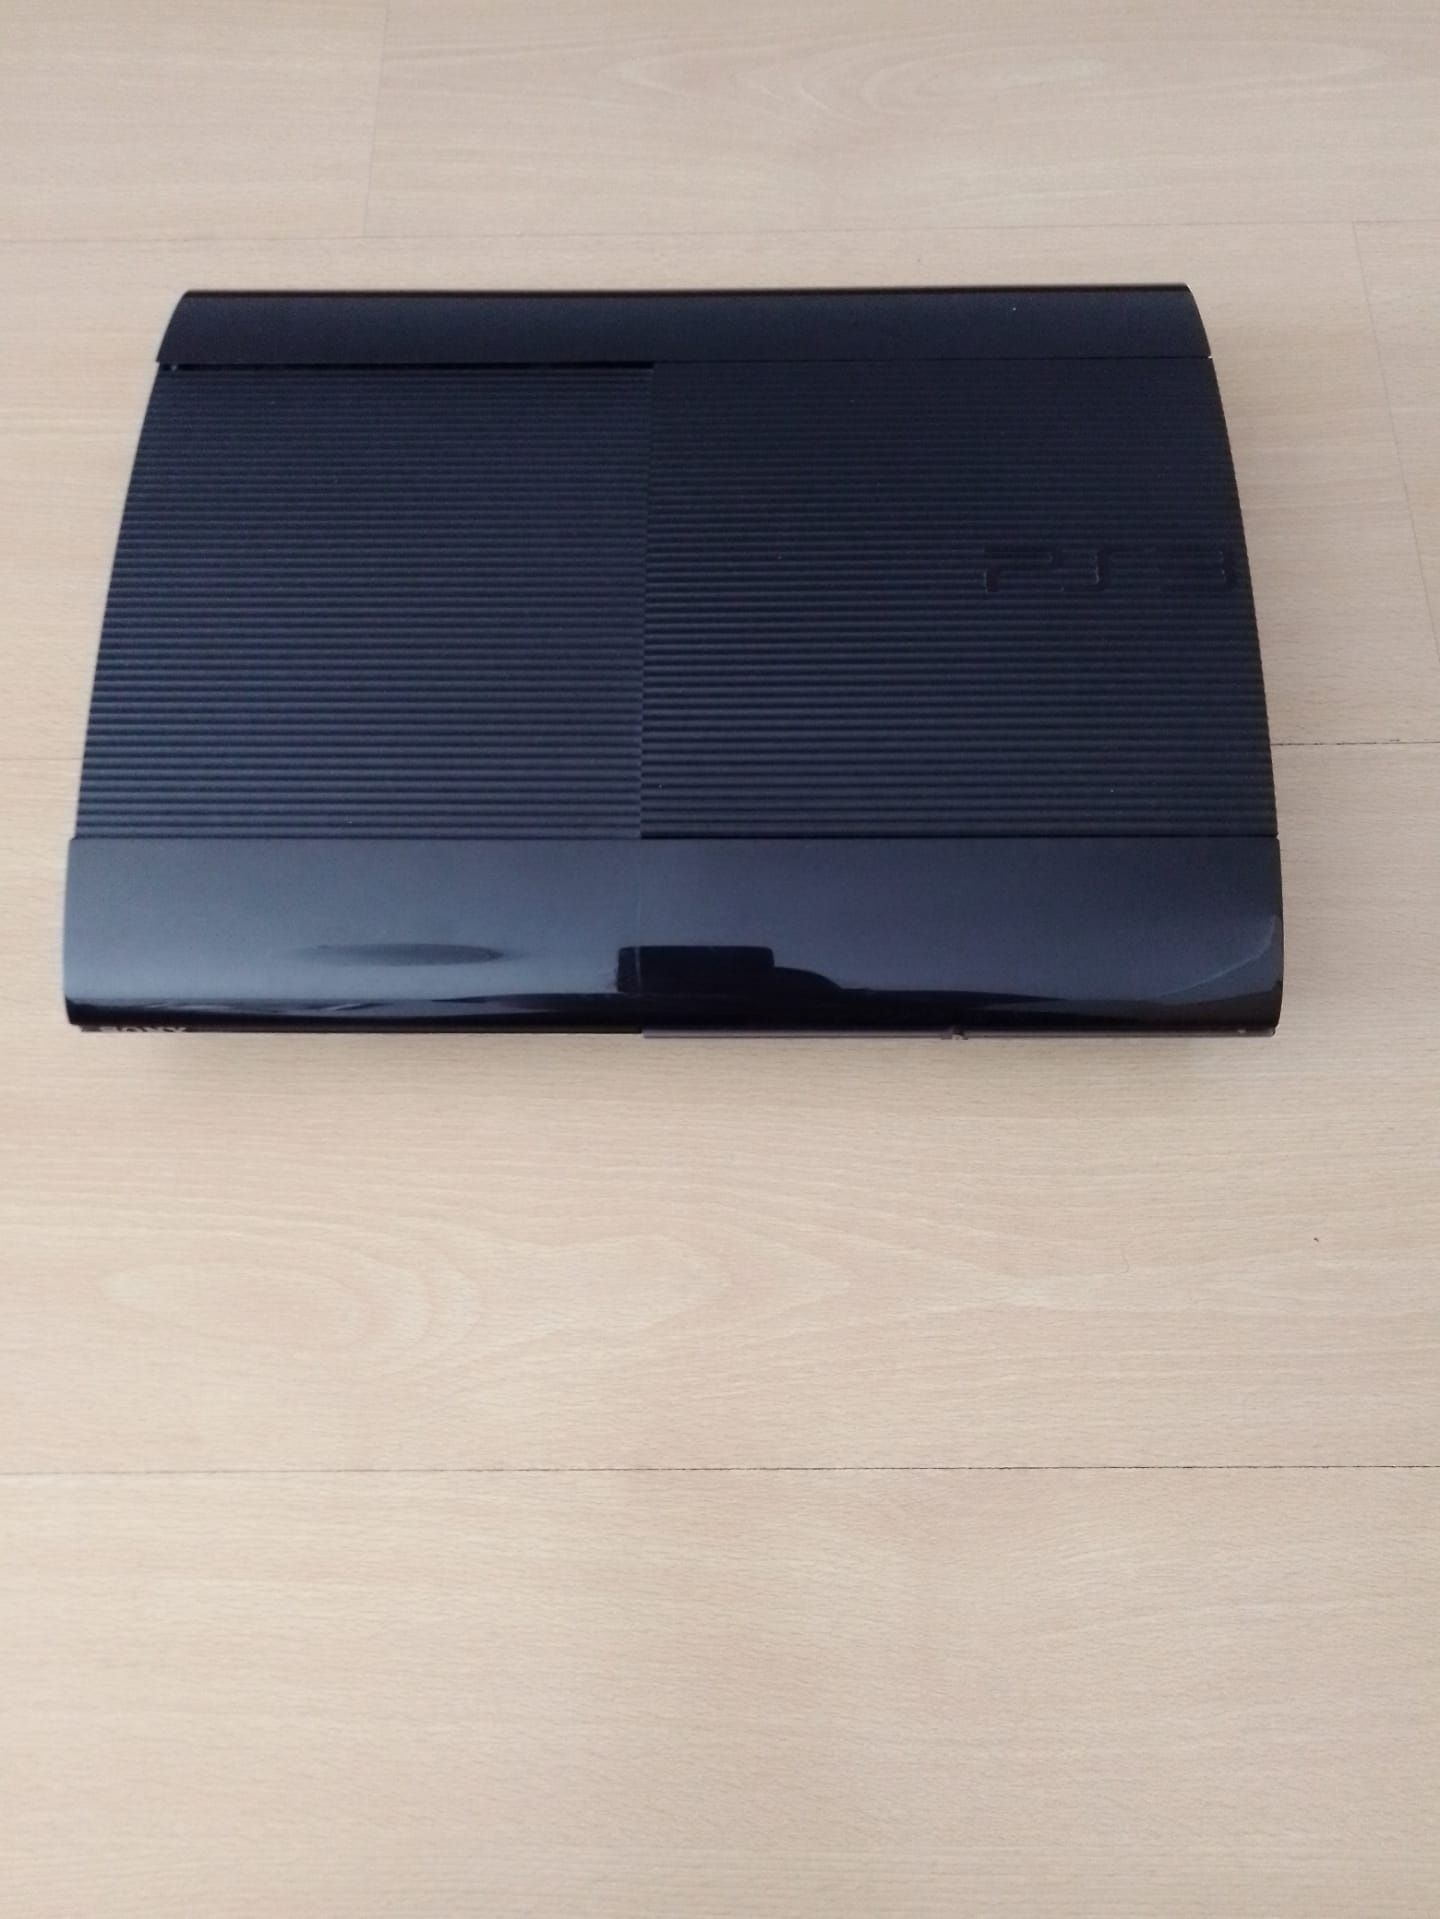 PlayStation 3, Super Slim, 500GB